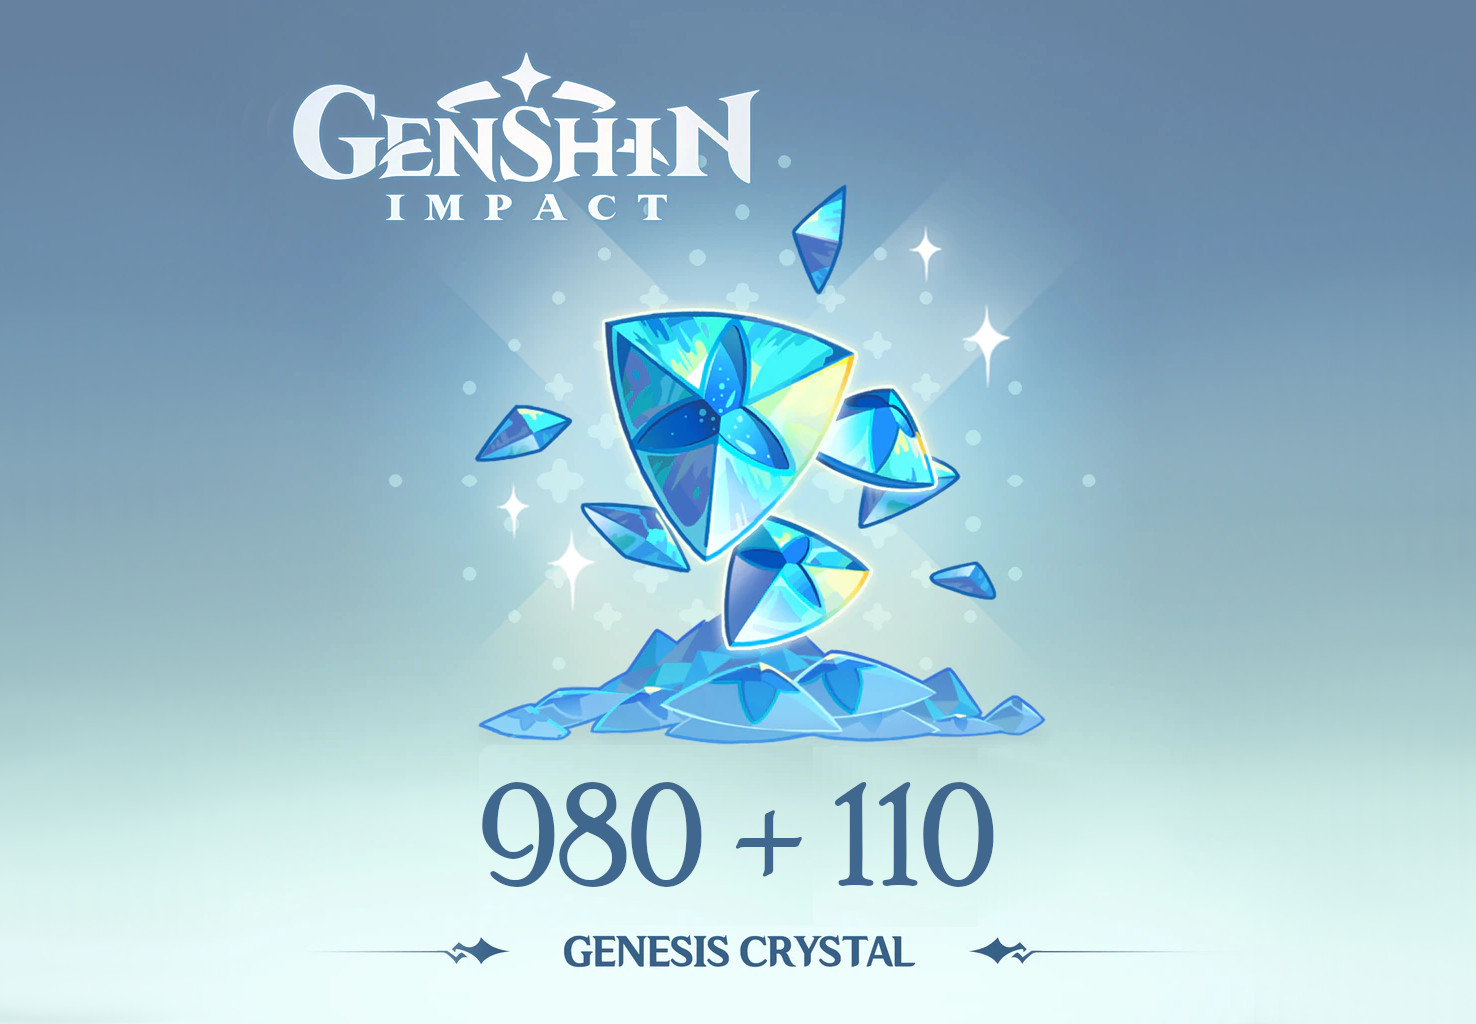 Genshin Impact - 980 + 110 Genesis Crystals Reidos Voucher 17.23 USD